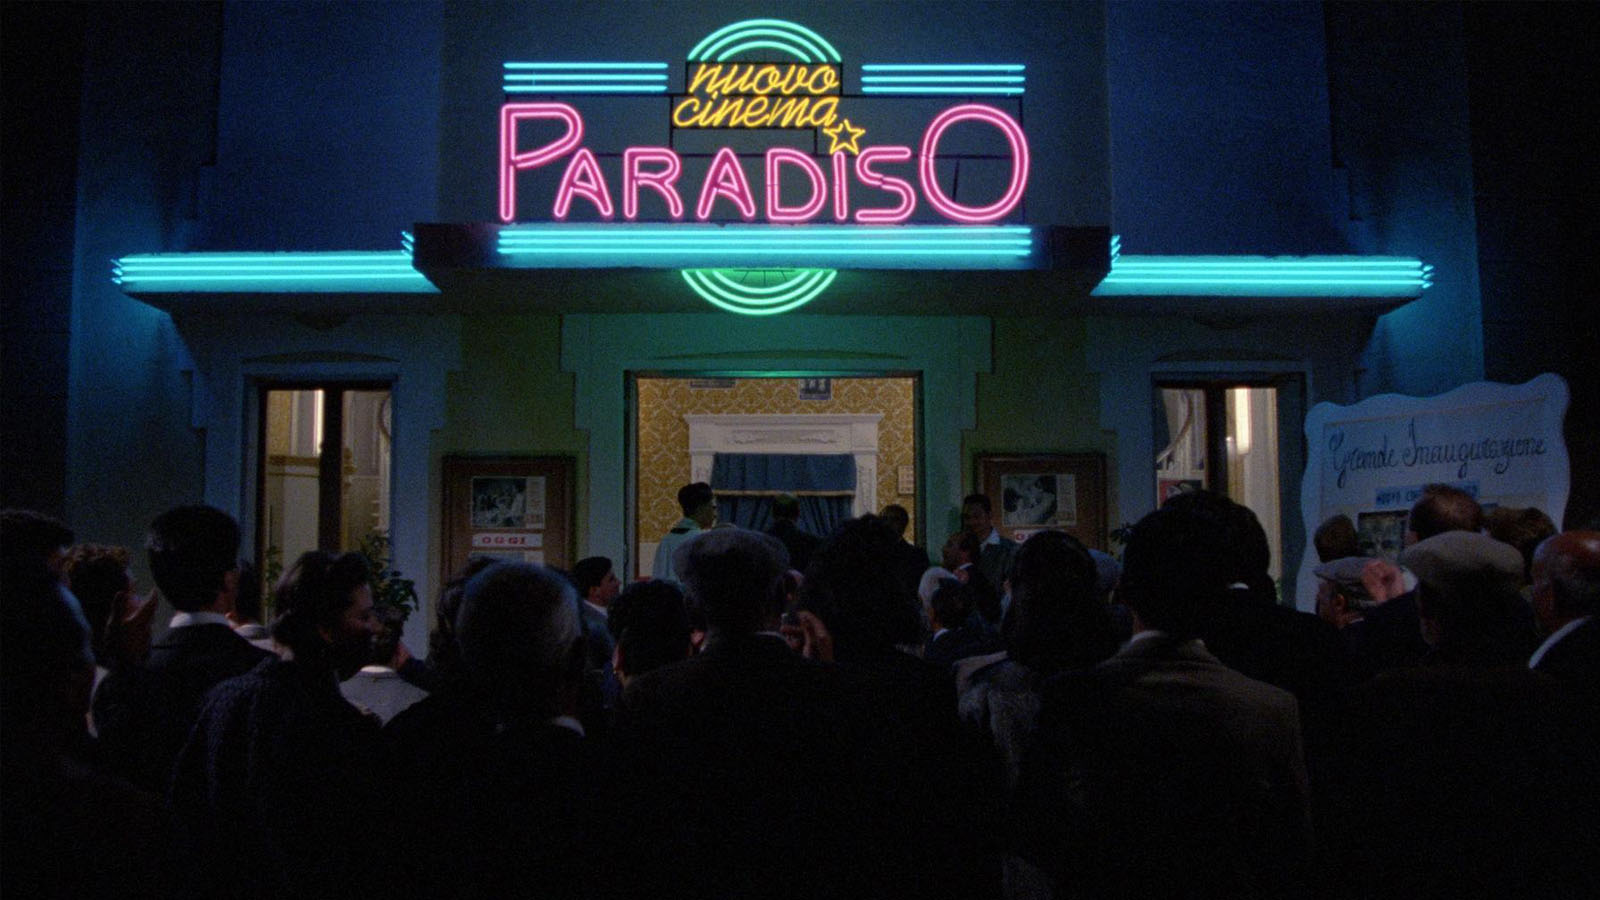 film still from Cinema Paradiso (1988)